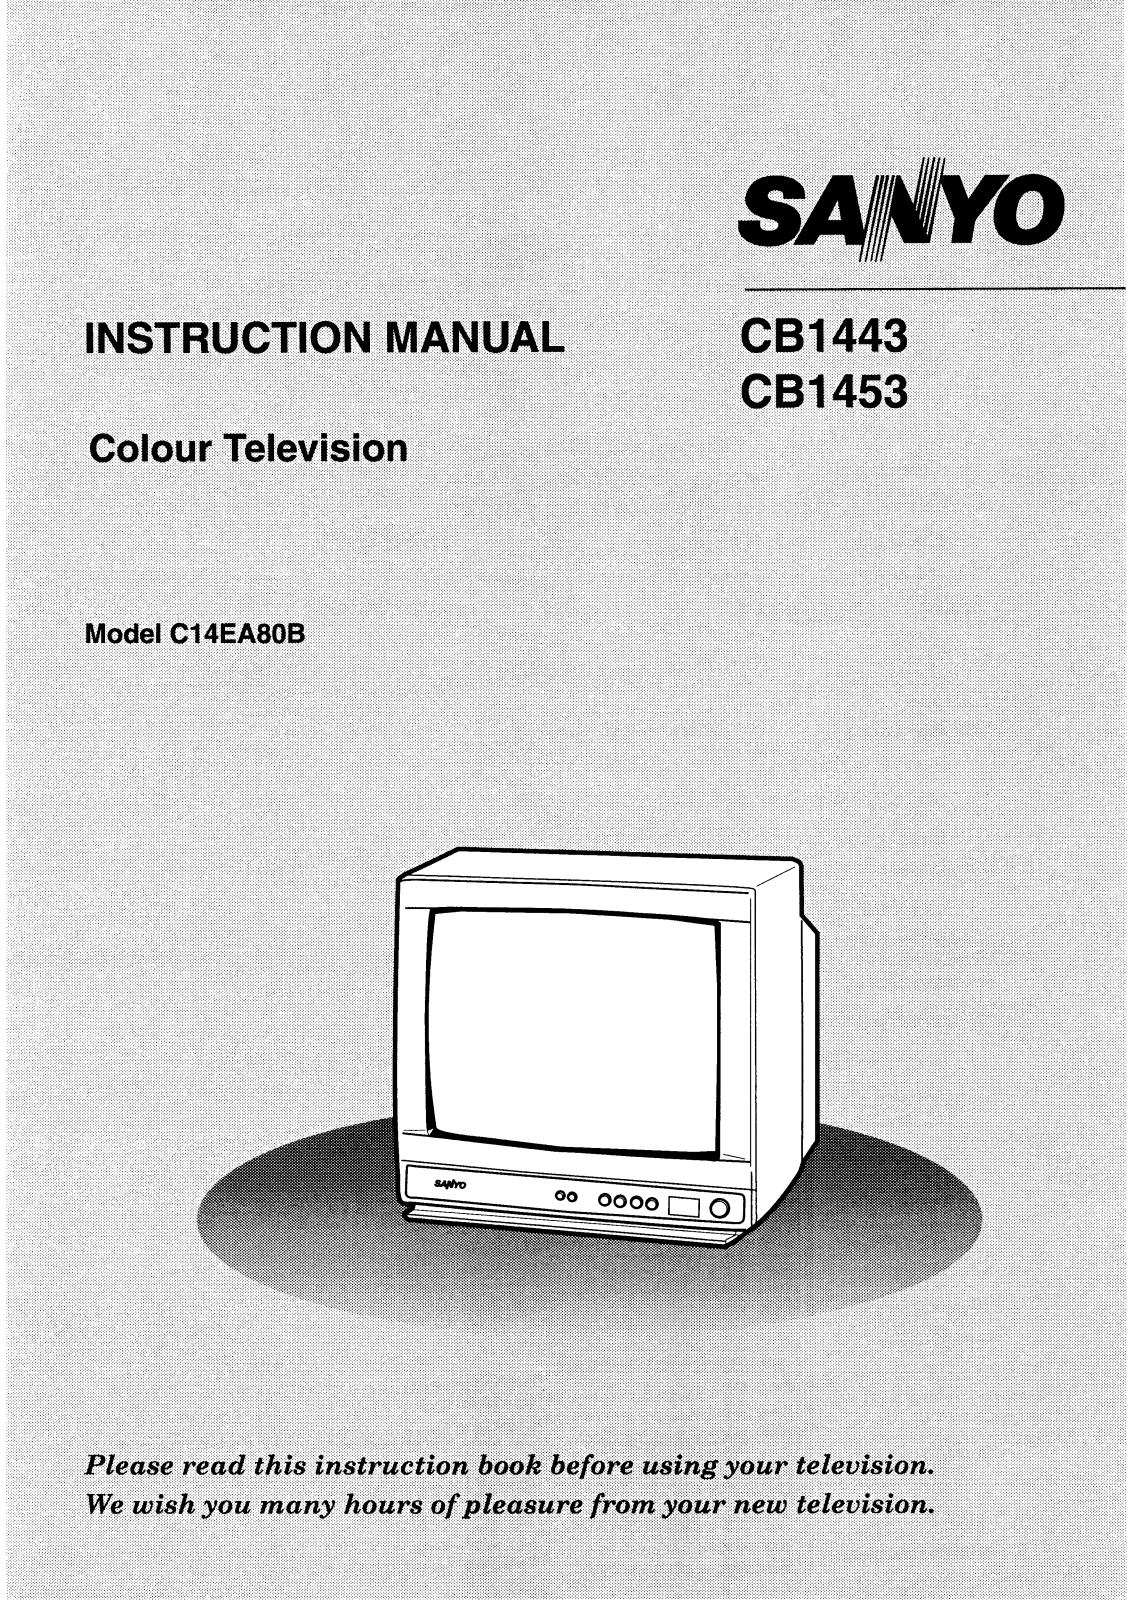 Sanyo CB1443 Instruction Manual